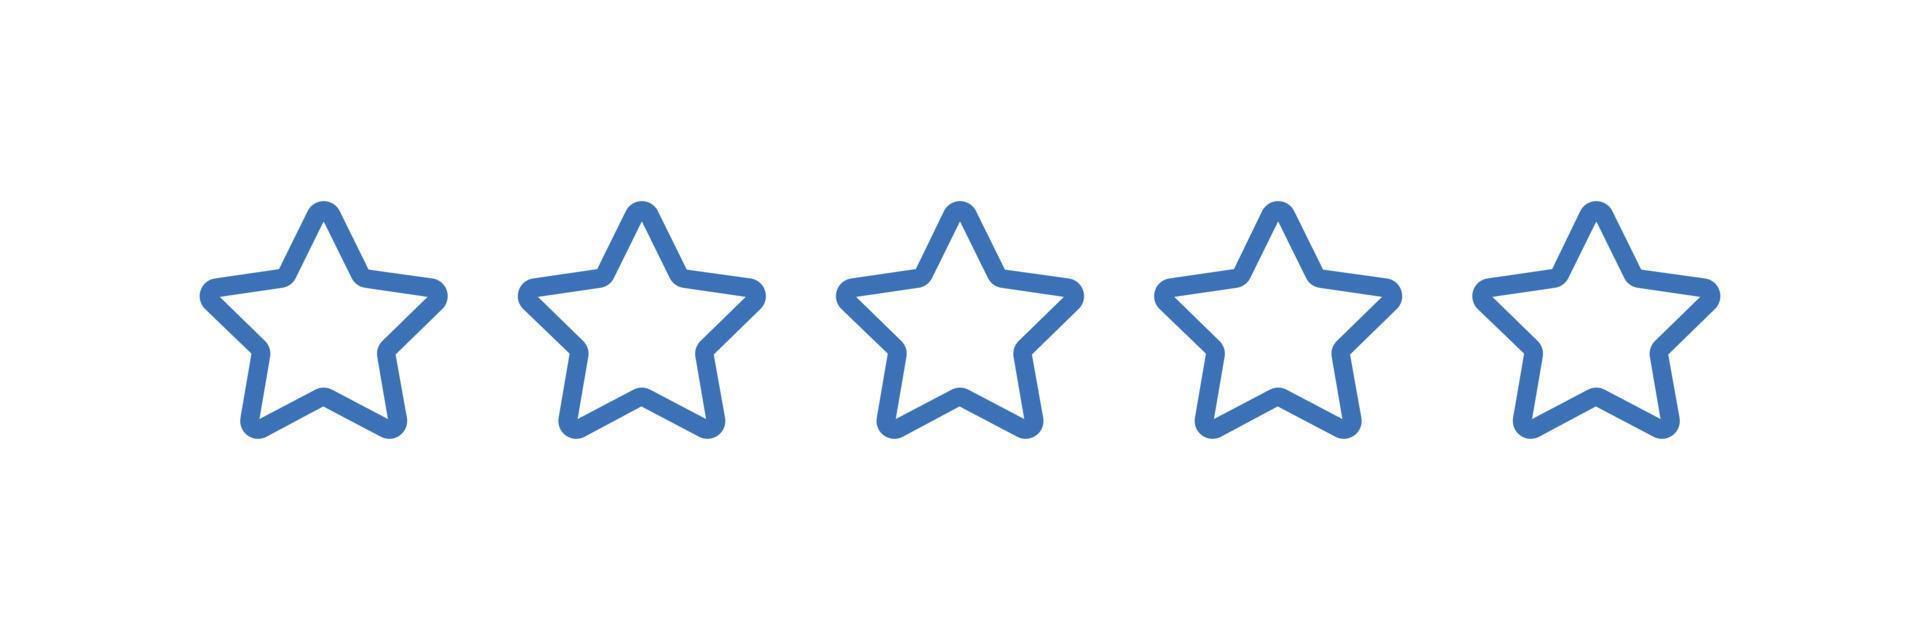 revisão de classificação de produto do cliente de cinco estrelas vetor